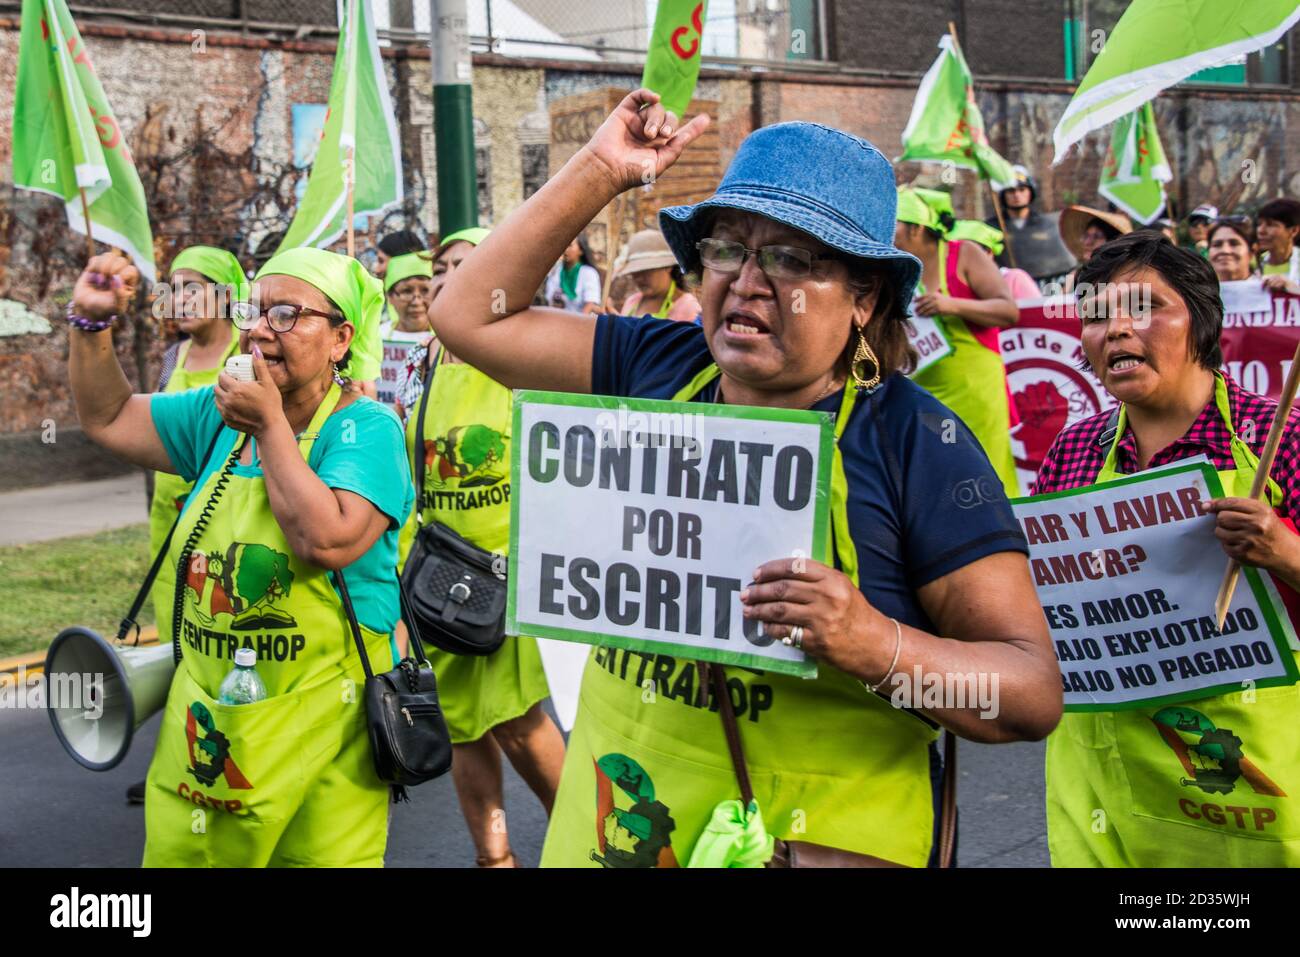 Les travailleuses protestent contre le manque de droits du travail et demandent des contrats écrits lors de la Journée internationale de la femme de 2020, Lima, Pérou Banque D'Images